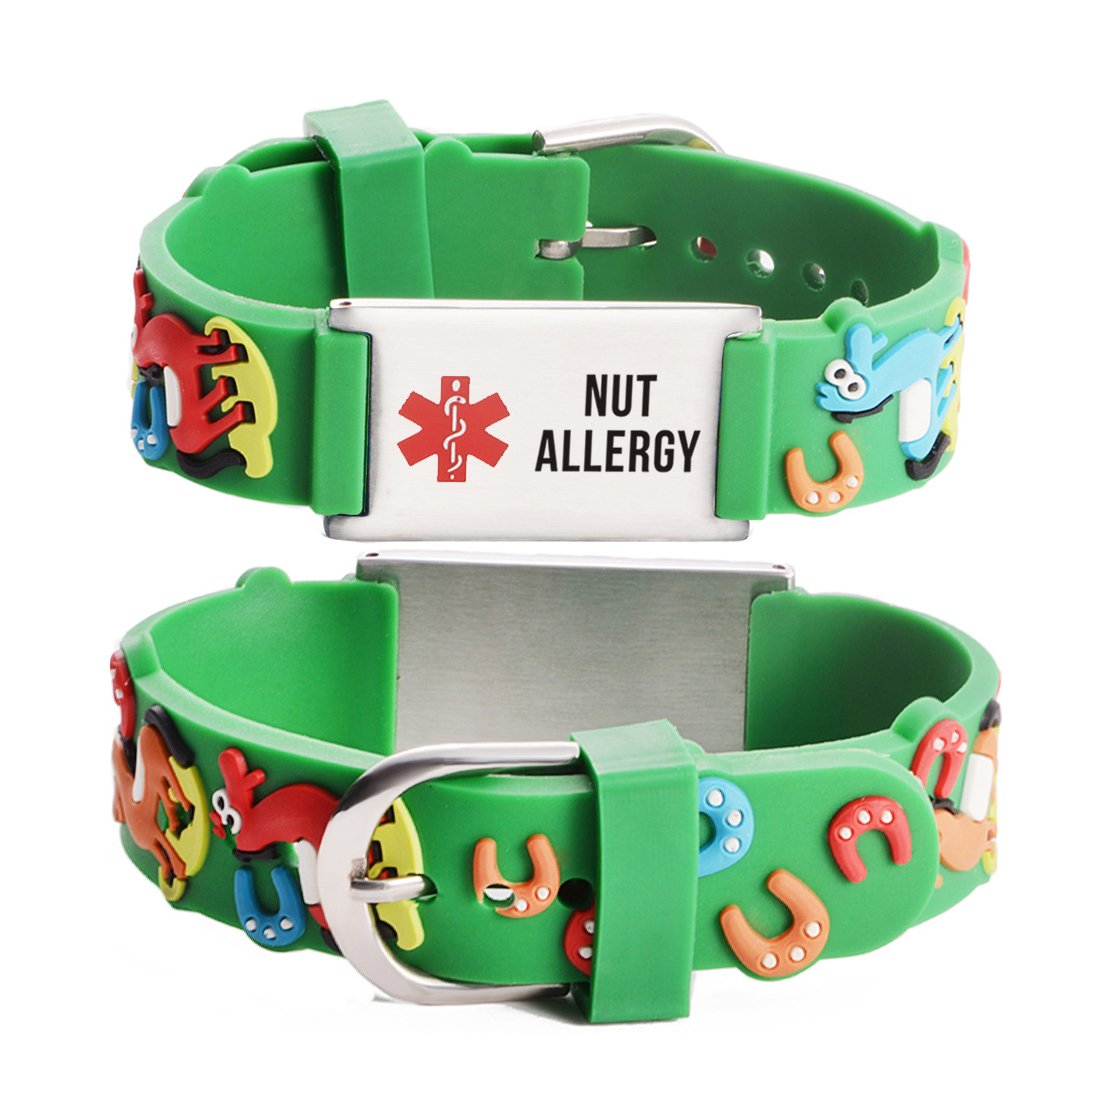 Nut allergy  bracelets for kids-Carousel